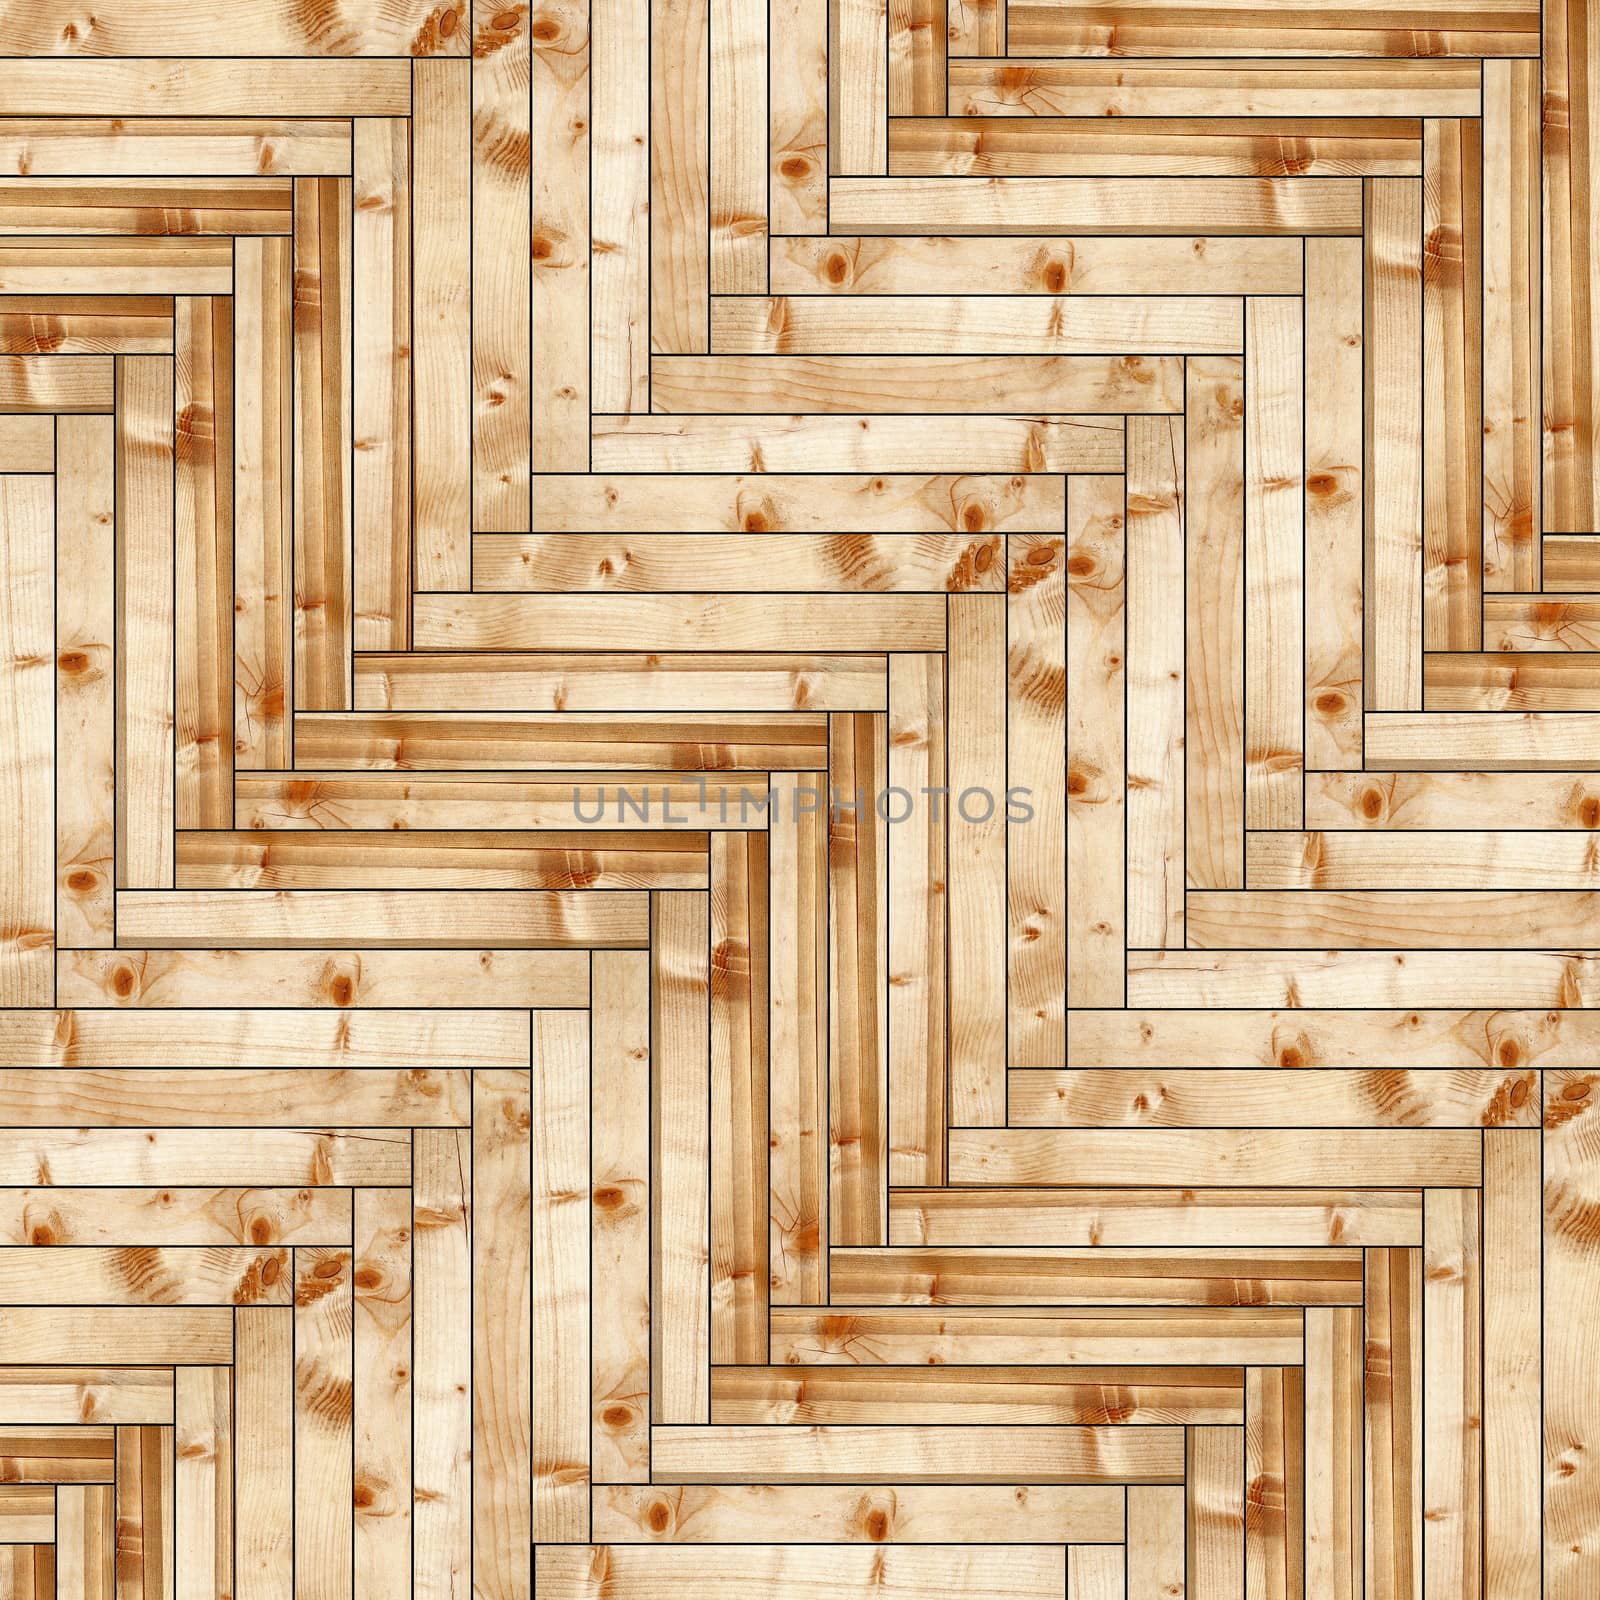 fir wood parquet design by taviphoto